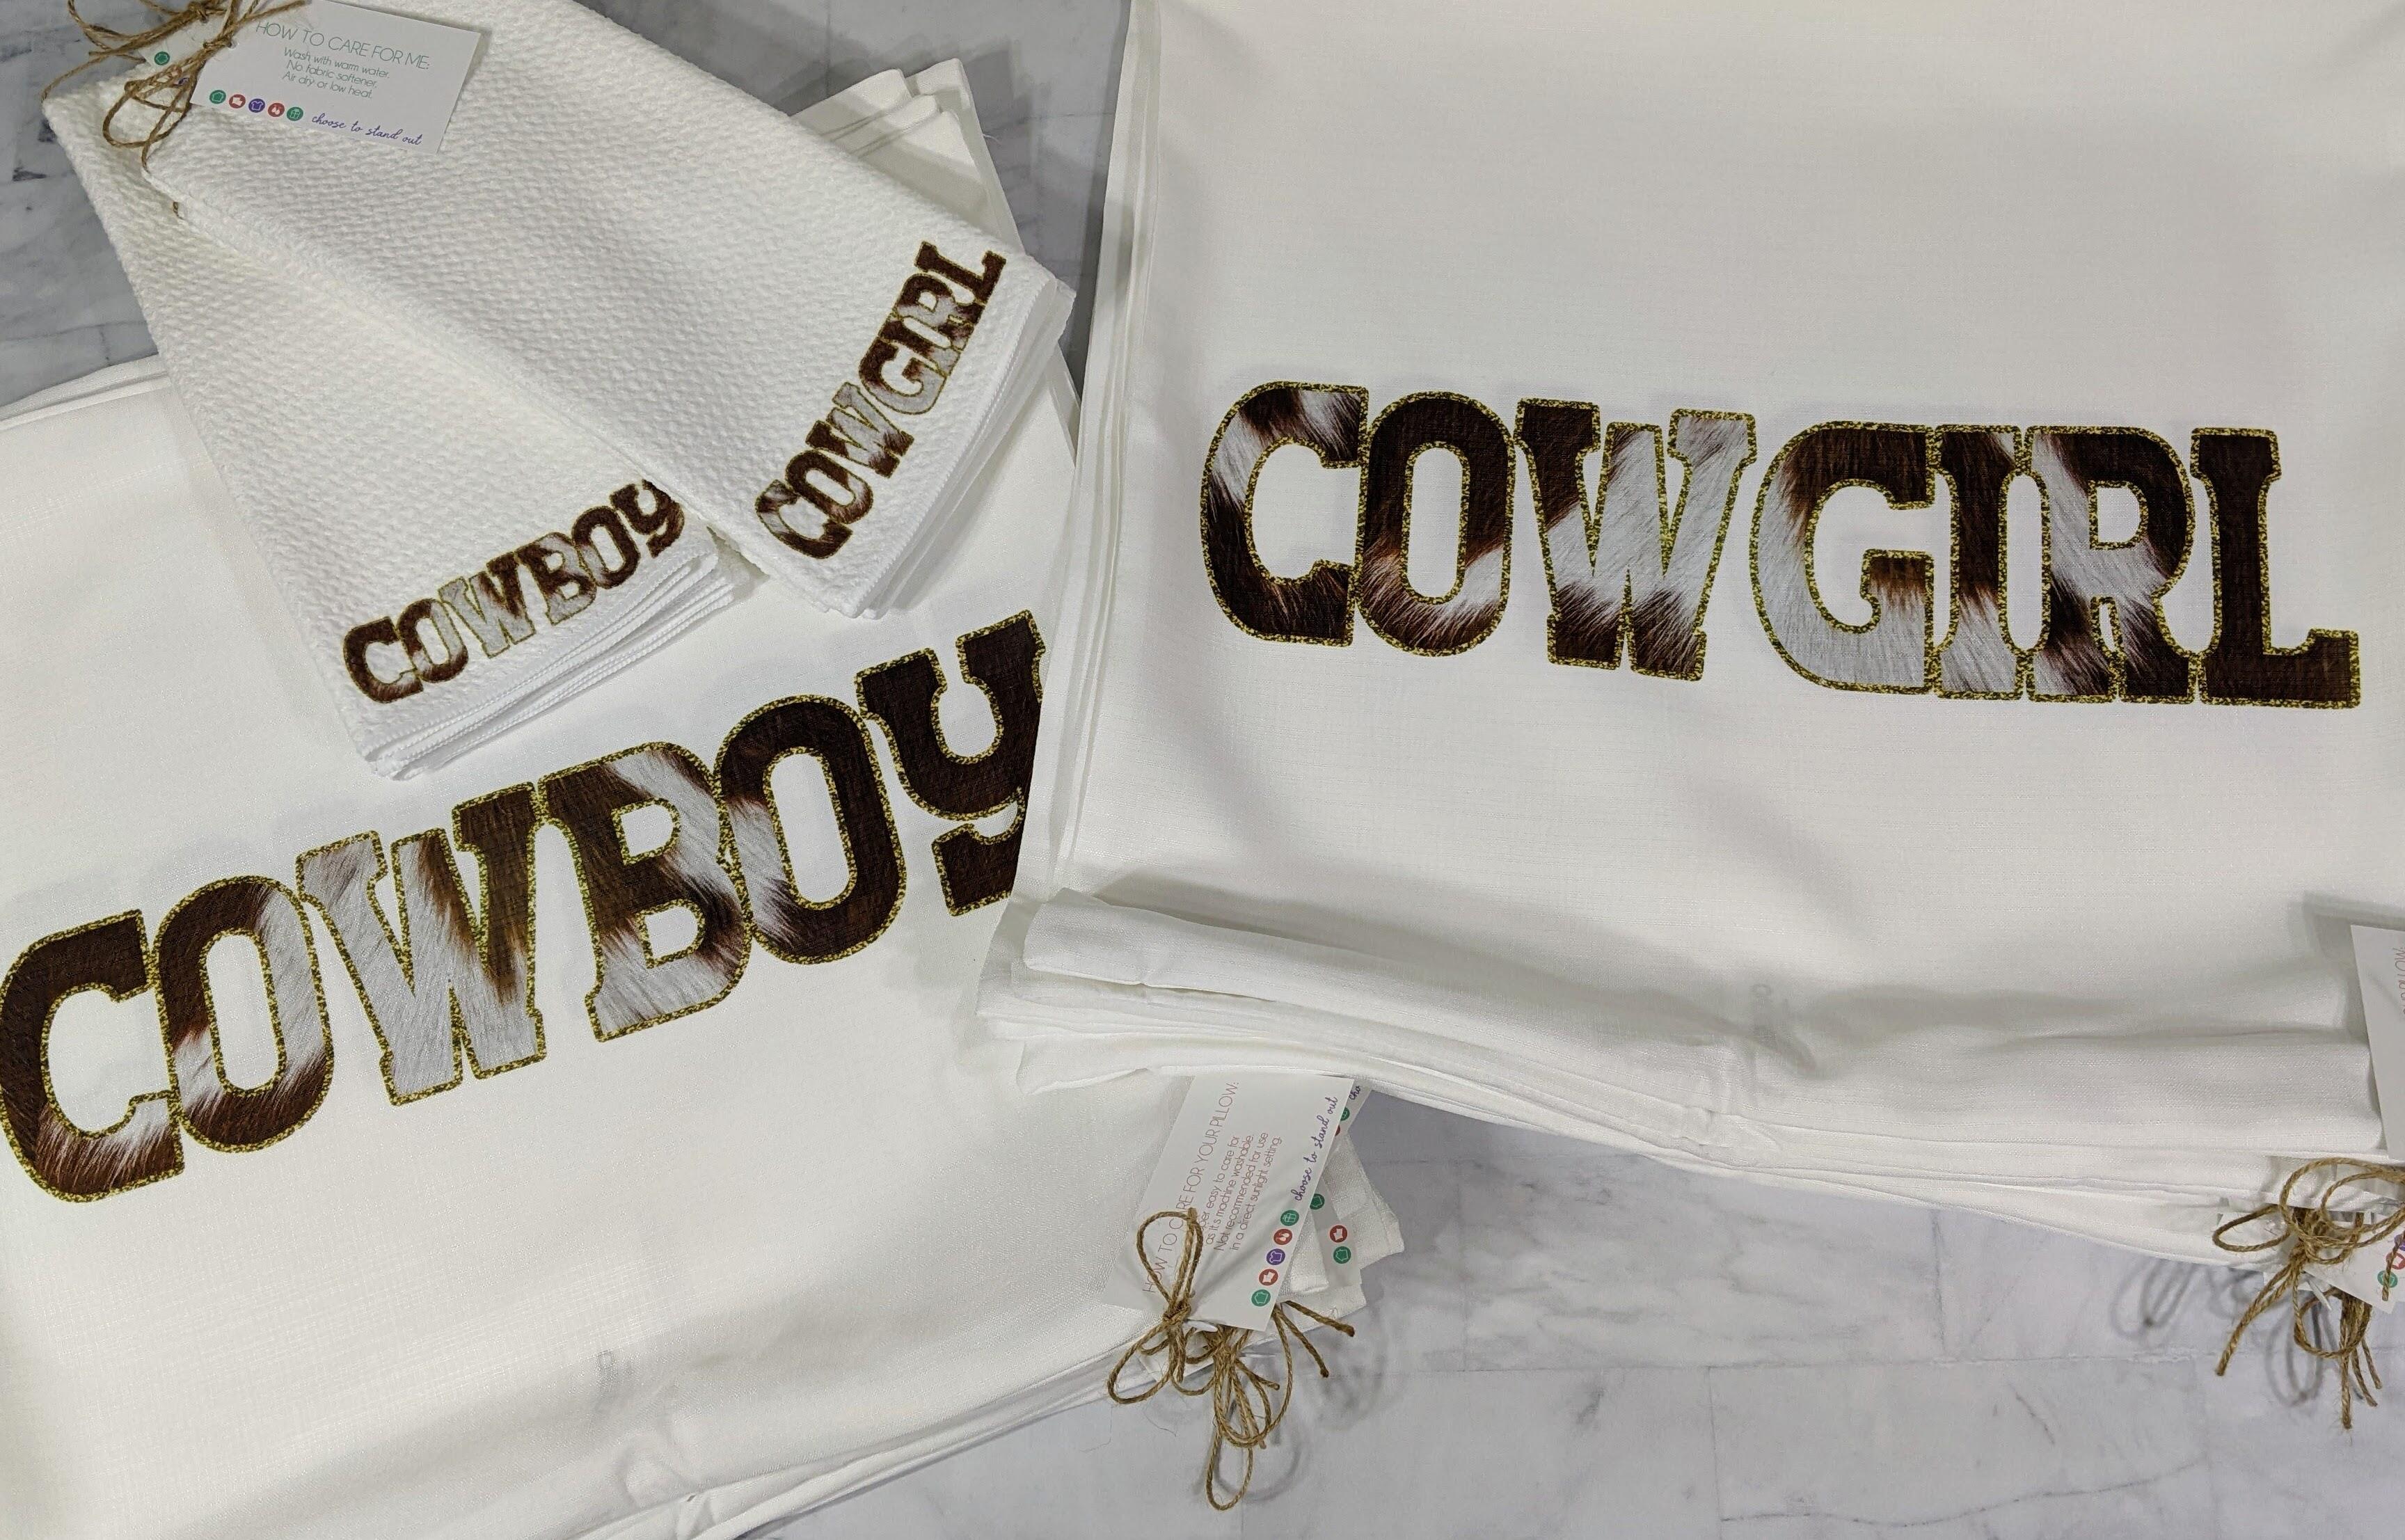 Cowhide cowboy hand towel